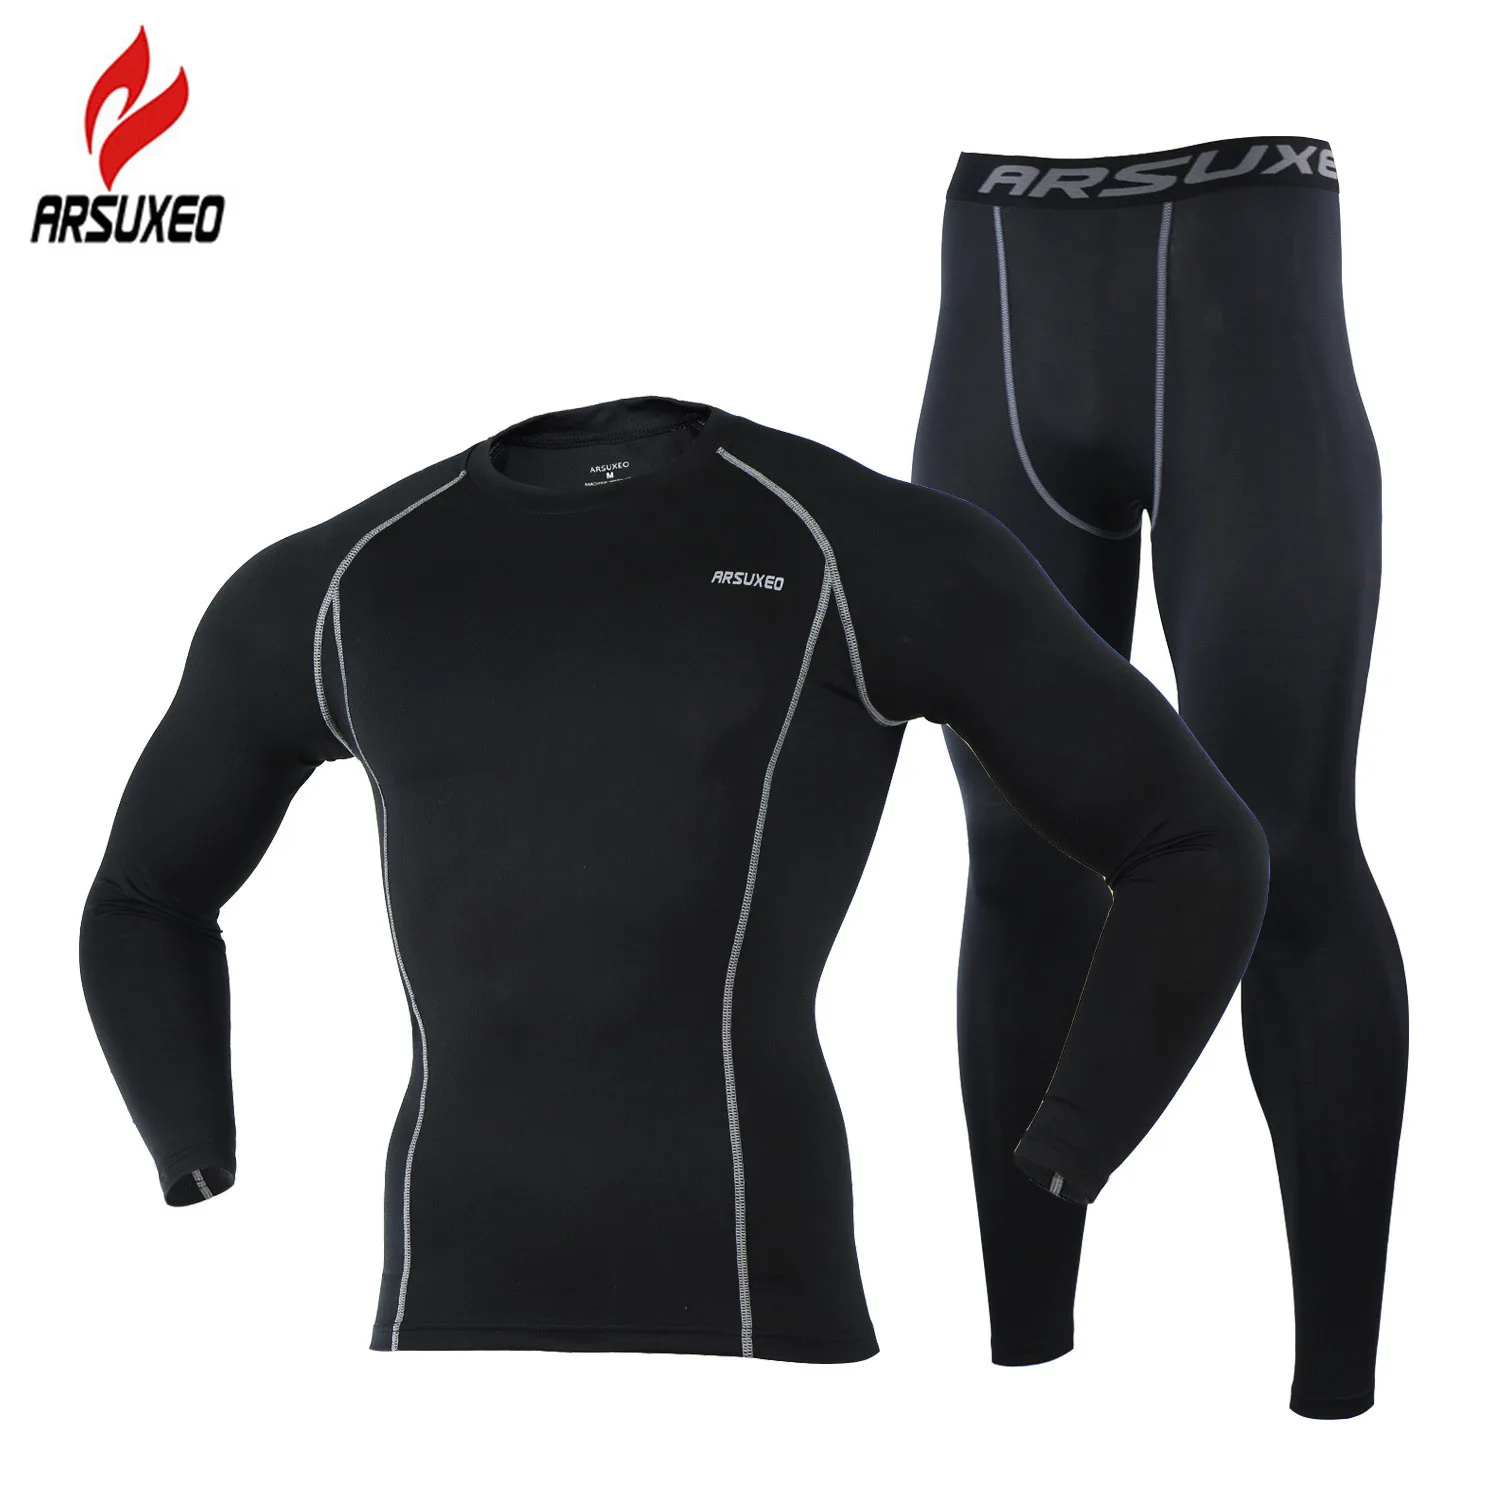 ARSUXEO мужской компрессионный комплект для бега, спорта, спортзала, фитнеса, трико, тренировки, Кроссфит, костюмы, длинная рубашка и леггинсы, брюки